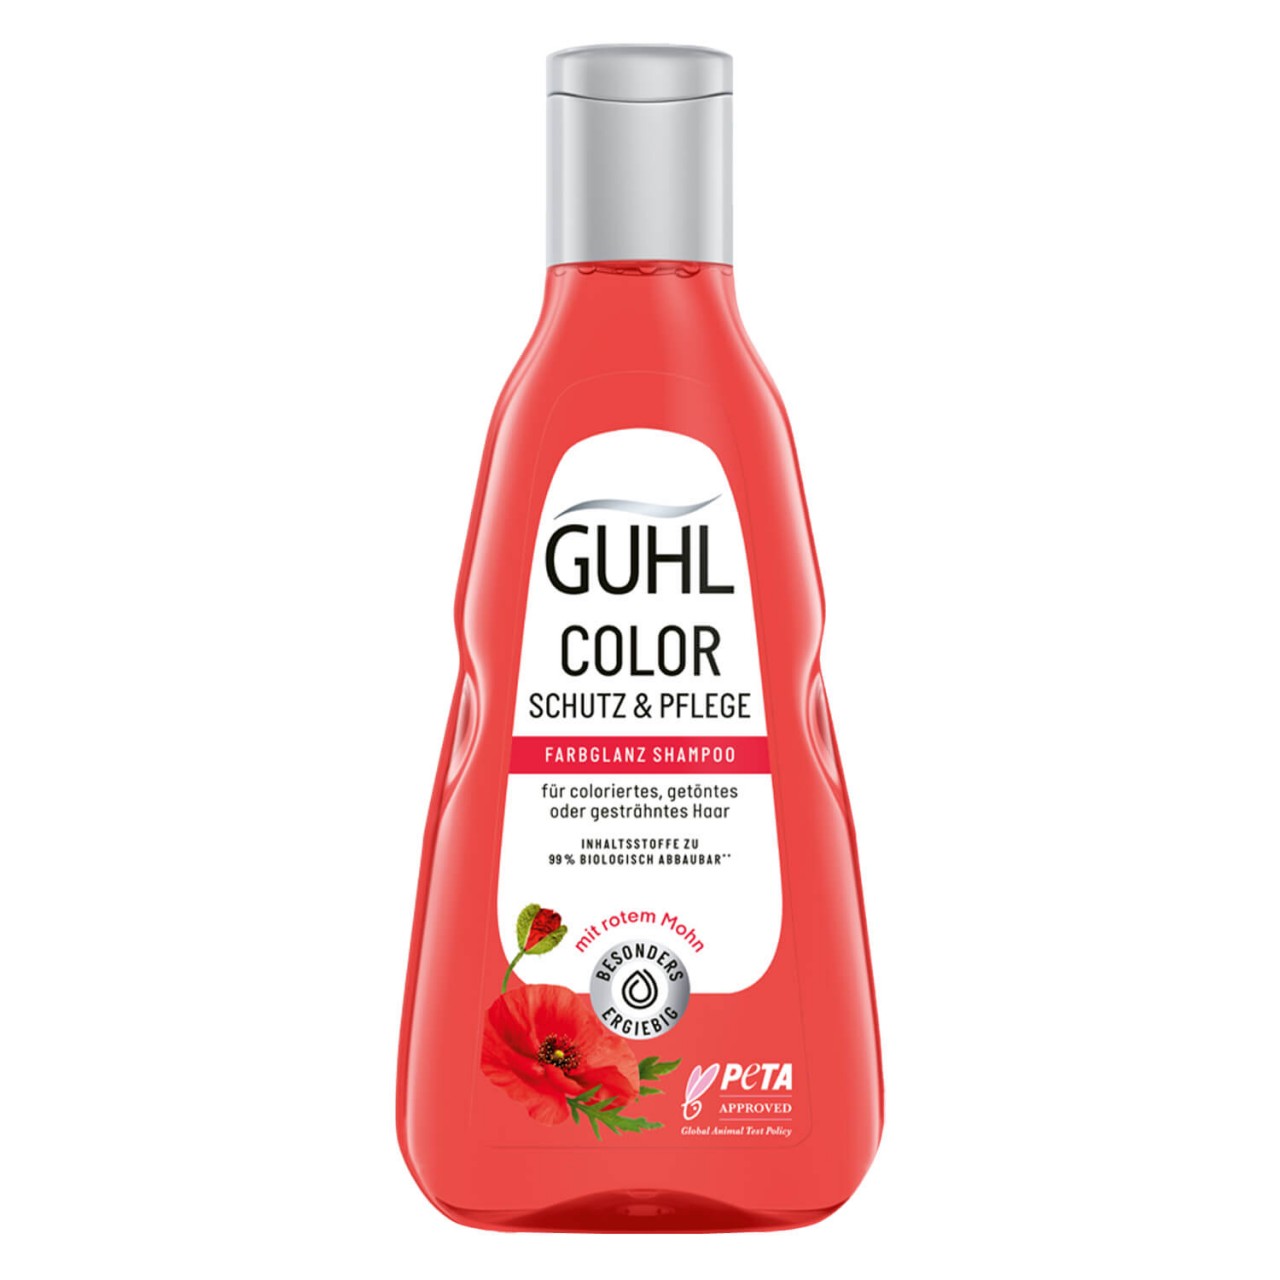 GUHL - COLOR SCHUTZ & PFLEGE Shampoo von GUHL